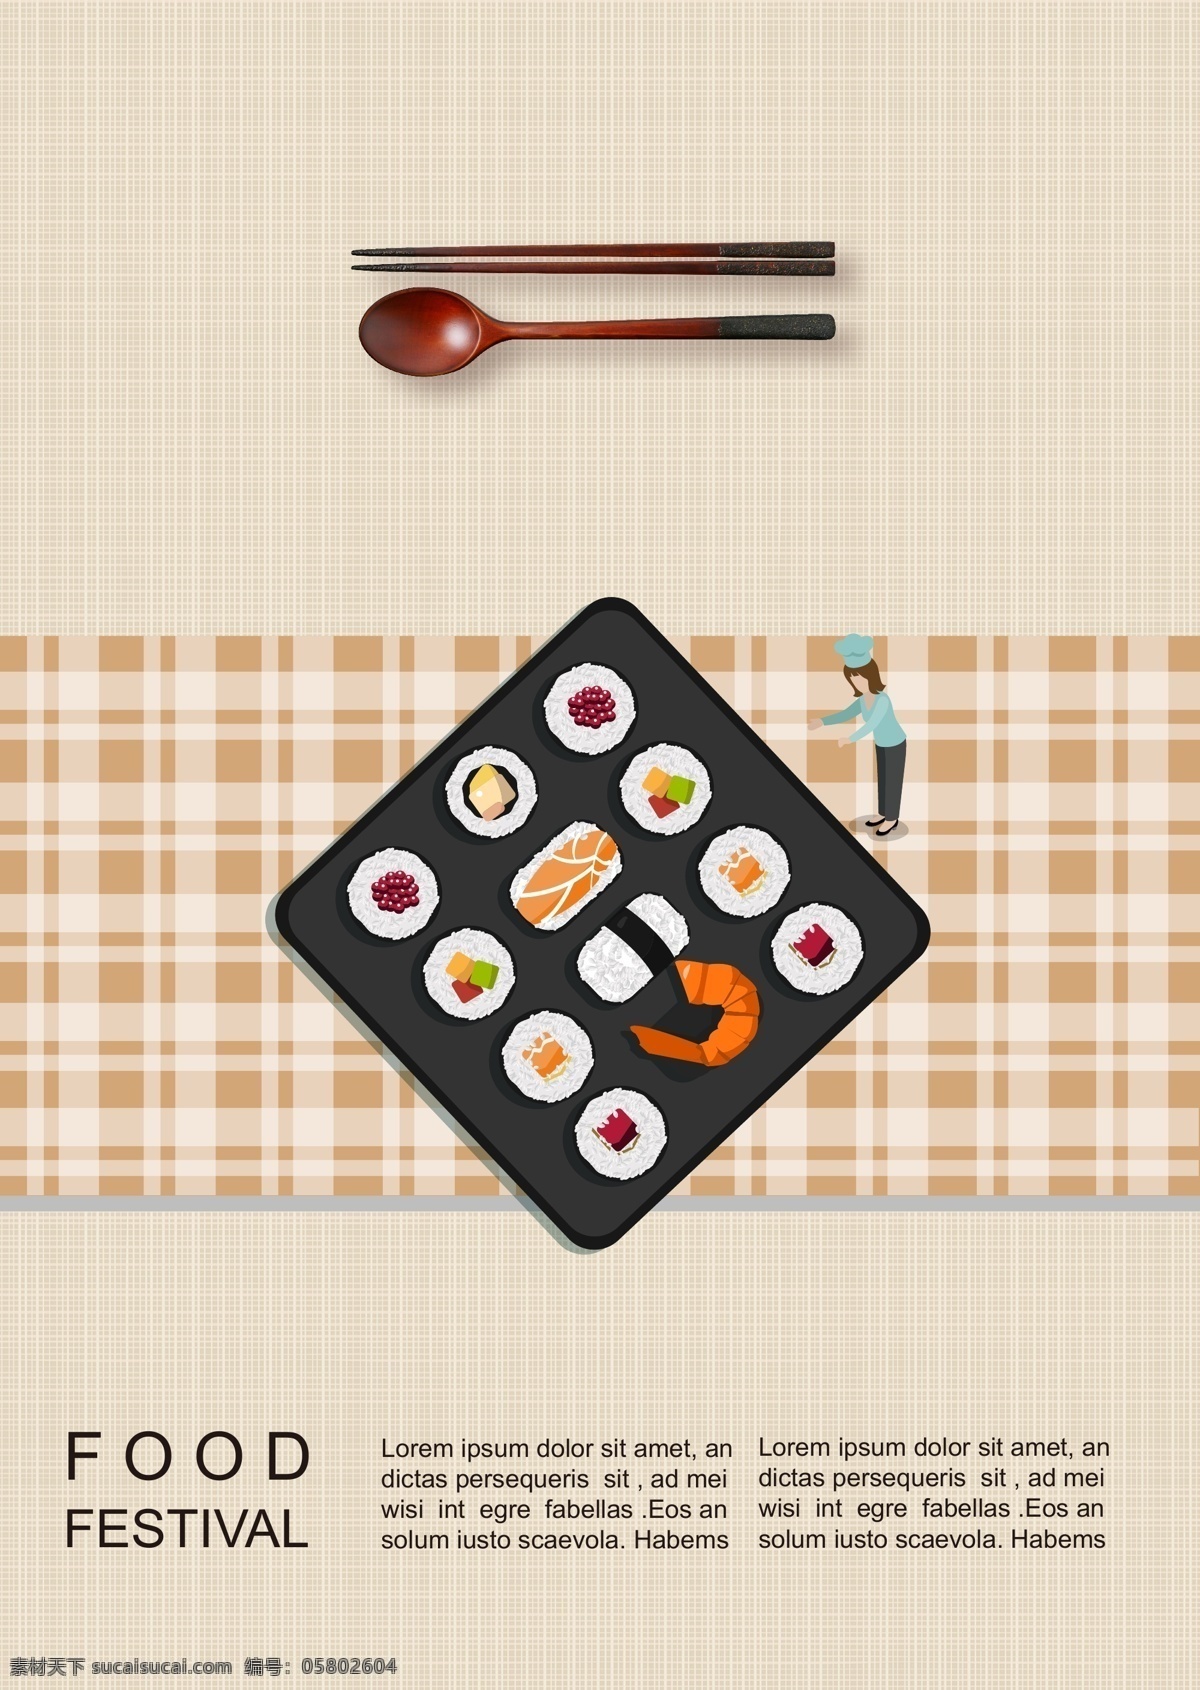 寿司 类型 可以 纸板 海报 苗圃 插图 停 的数量 手工制作 三文鱼 主厨 盘子 筷子 新鲜 帽 韩国风格 田园风格 天妇罗 金 鱼子酱